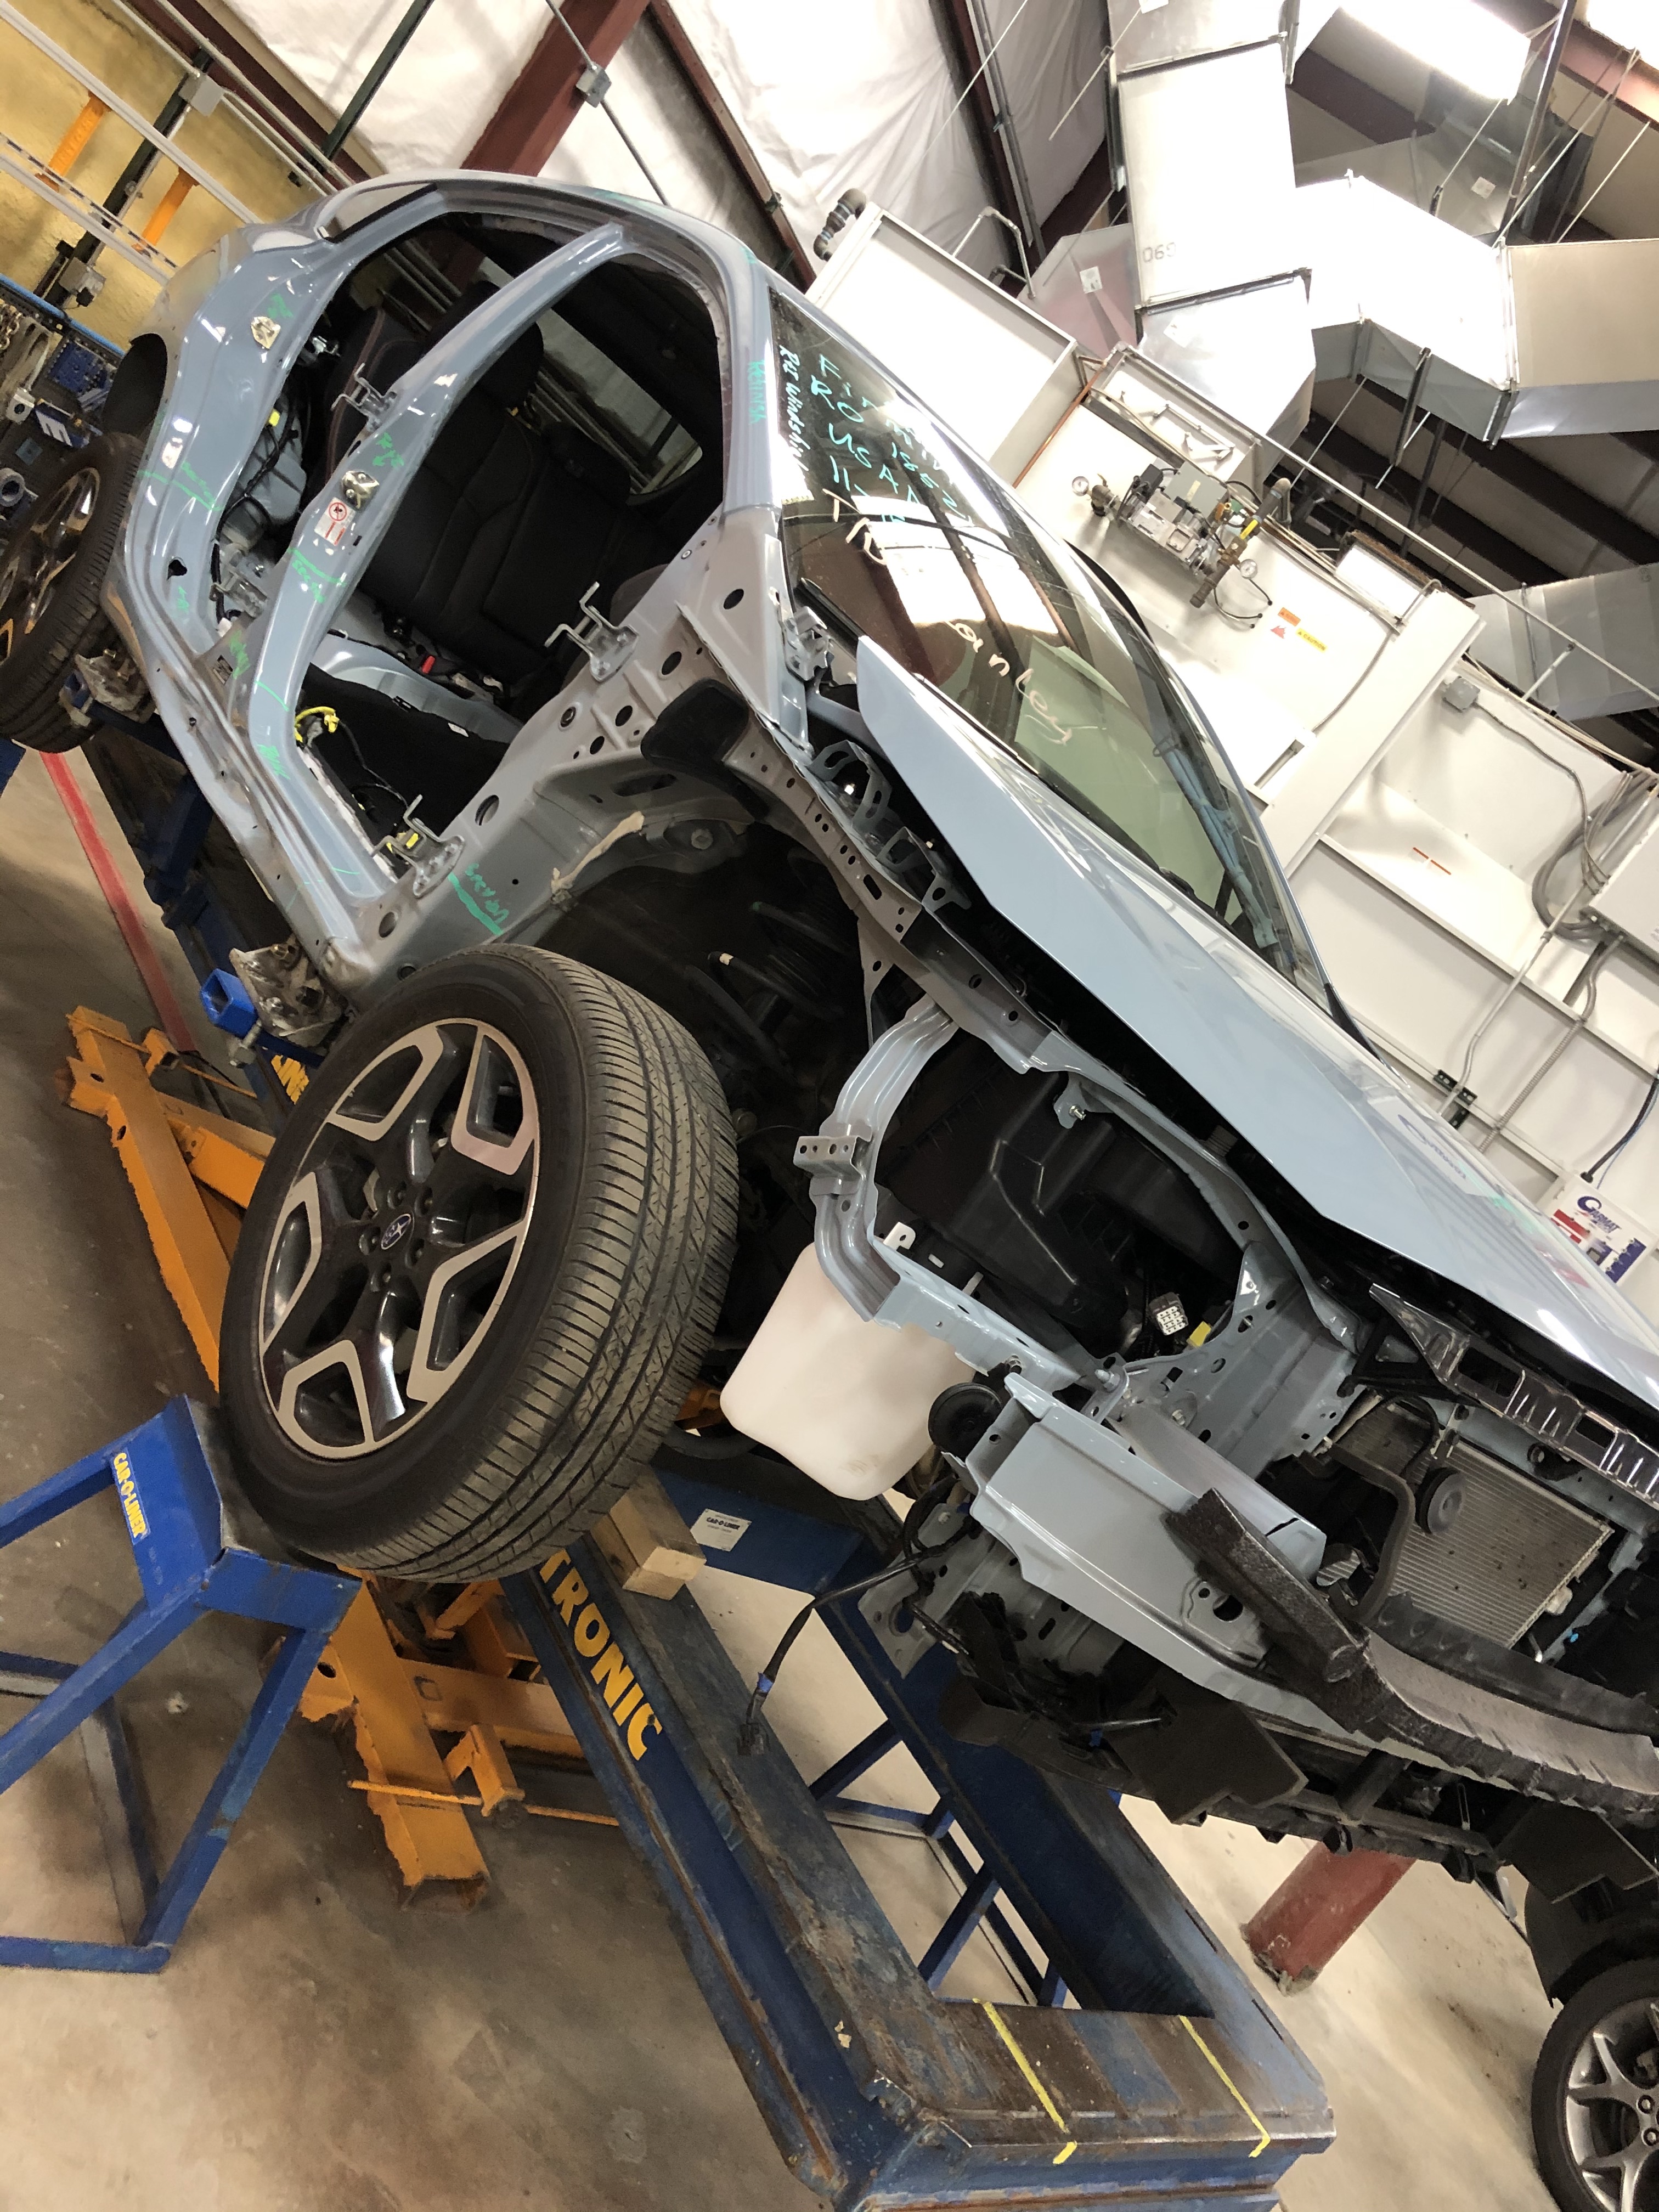 Subaru repair at Nylund's Collision Center